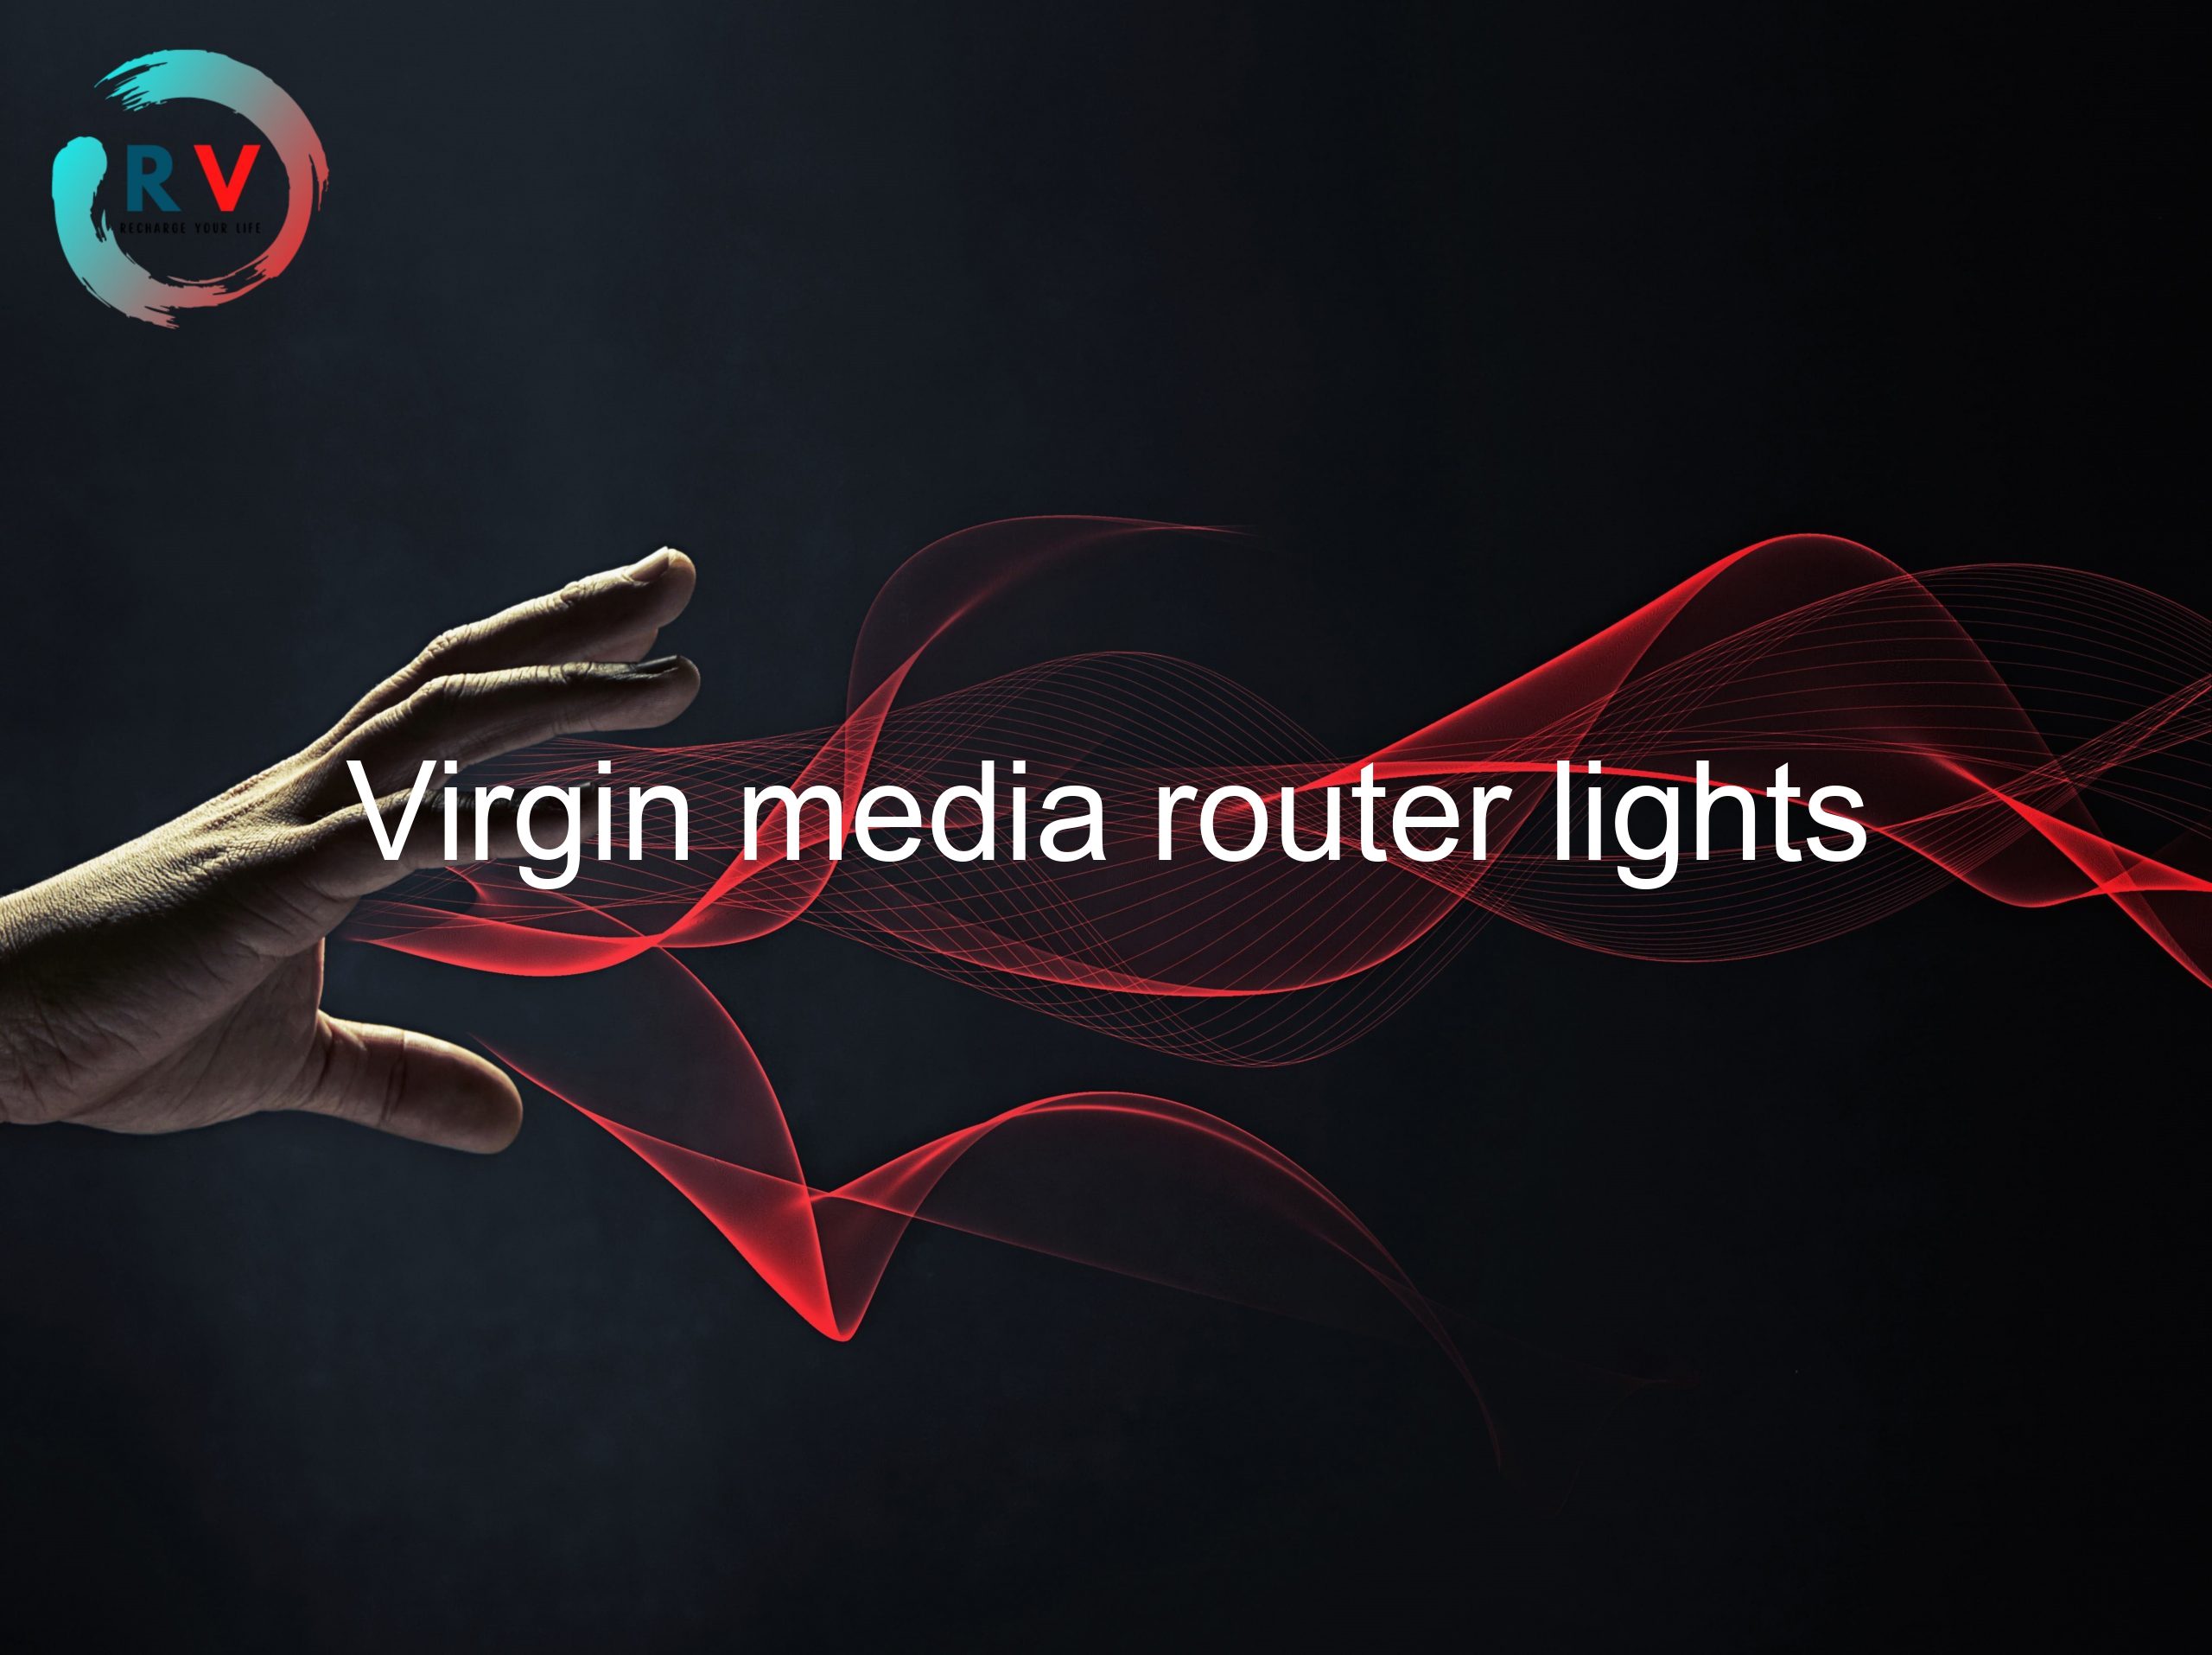 Virgin media router lights